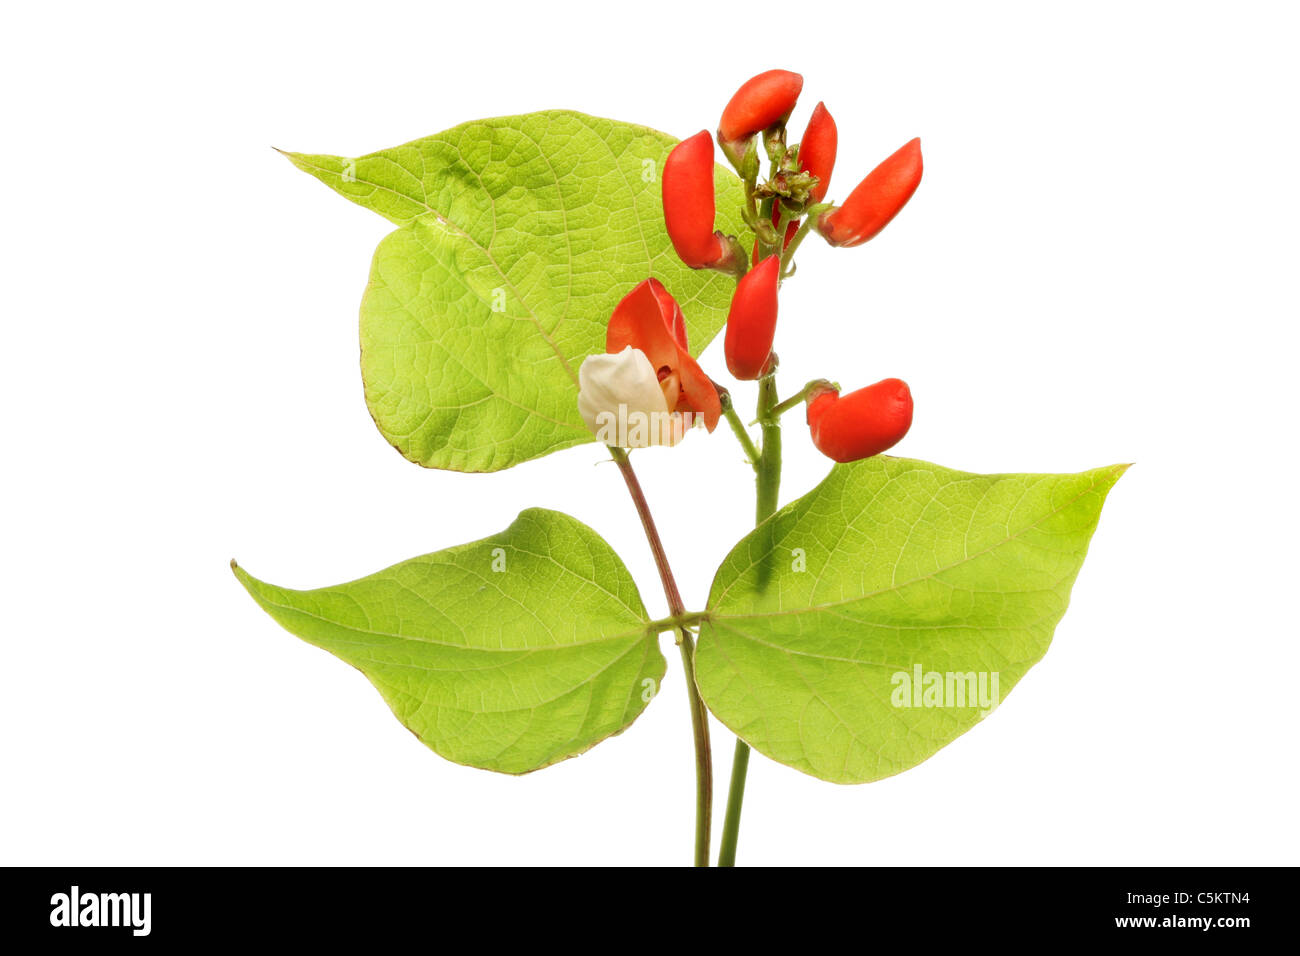 Runner bean flower and leaves isolated against white Stock Photo